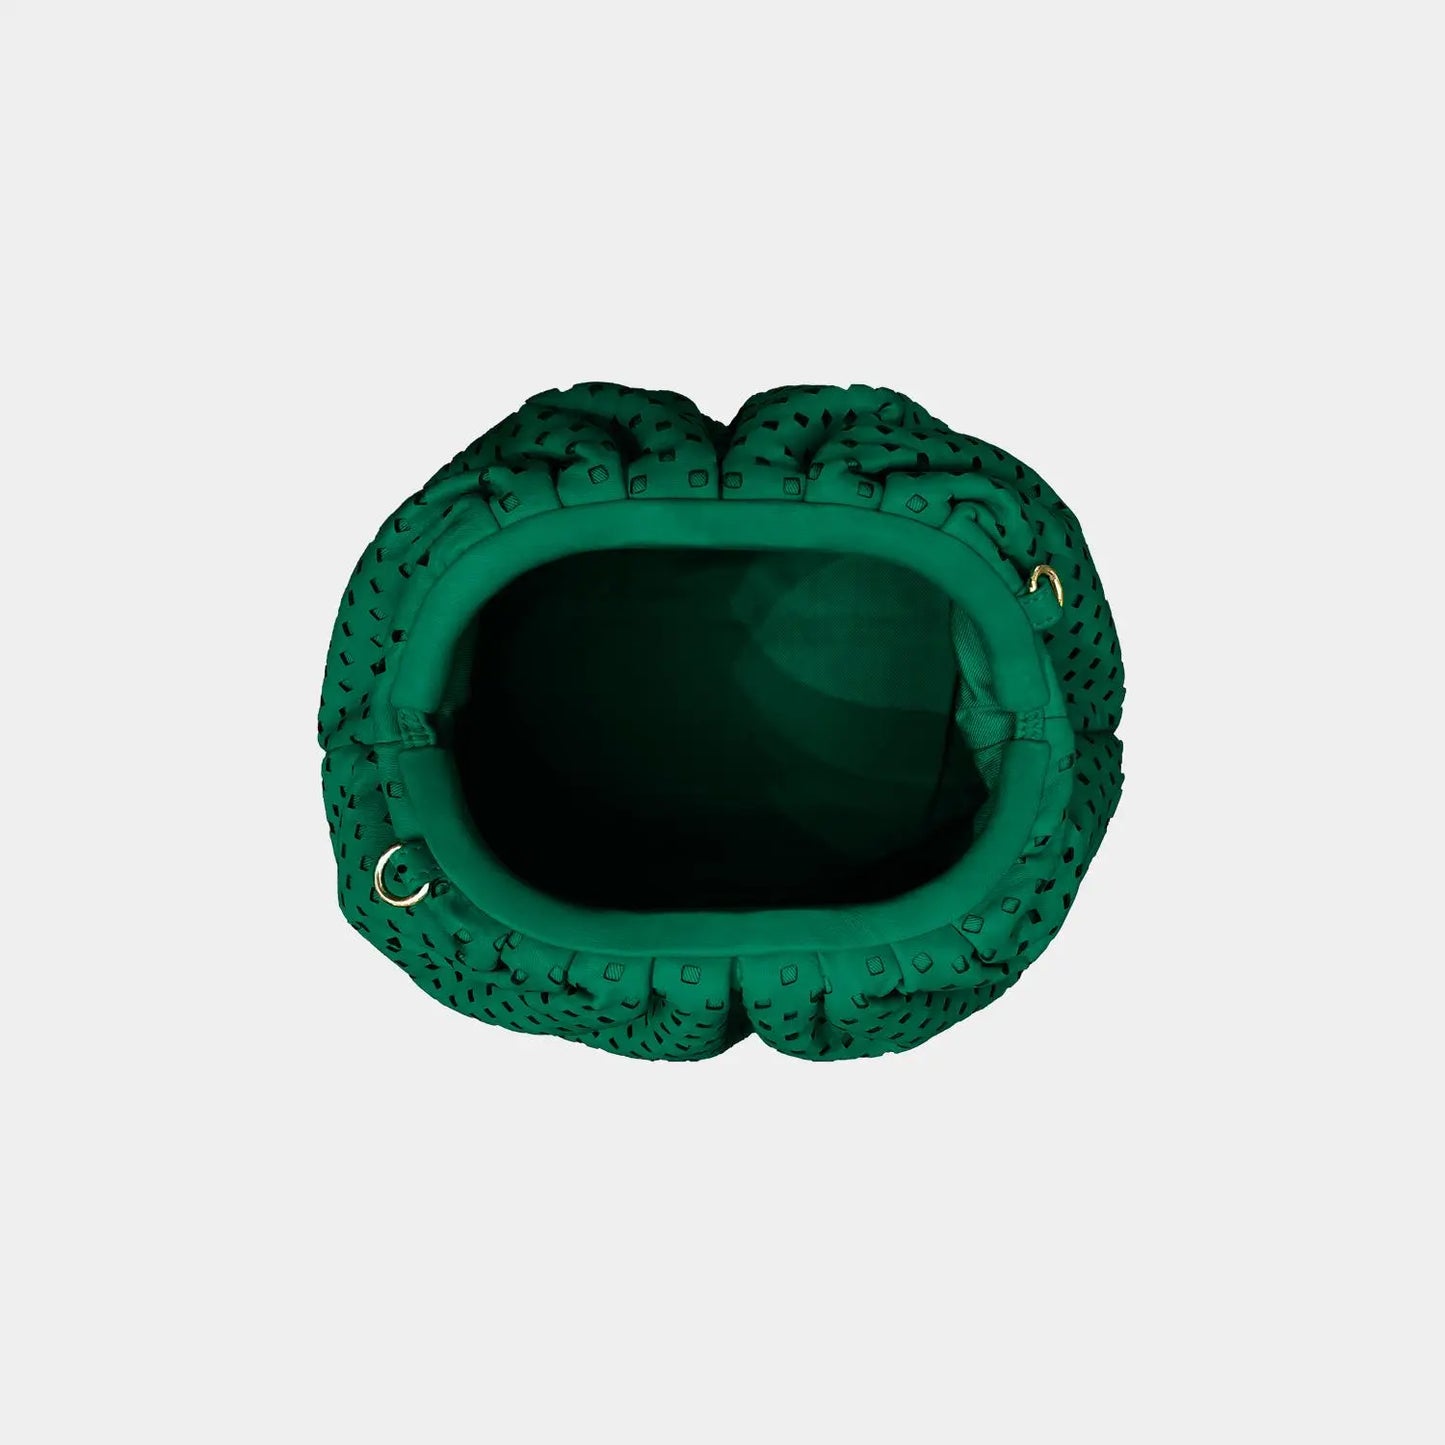 Big Uniq Perforate Verde Sista - pochette de soirée en cuir verte perforée